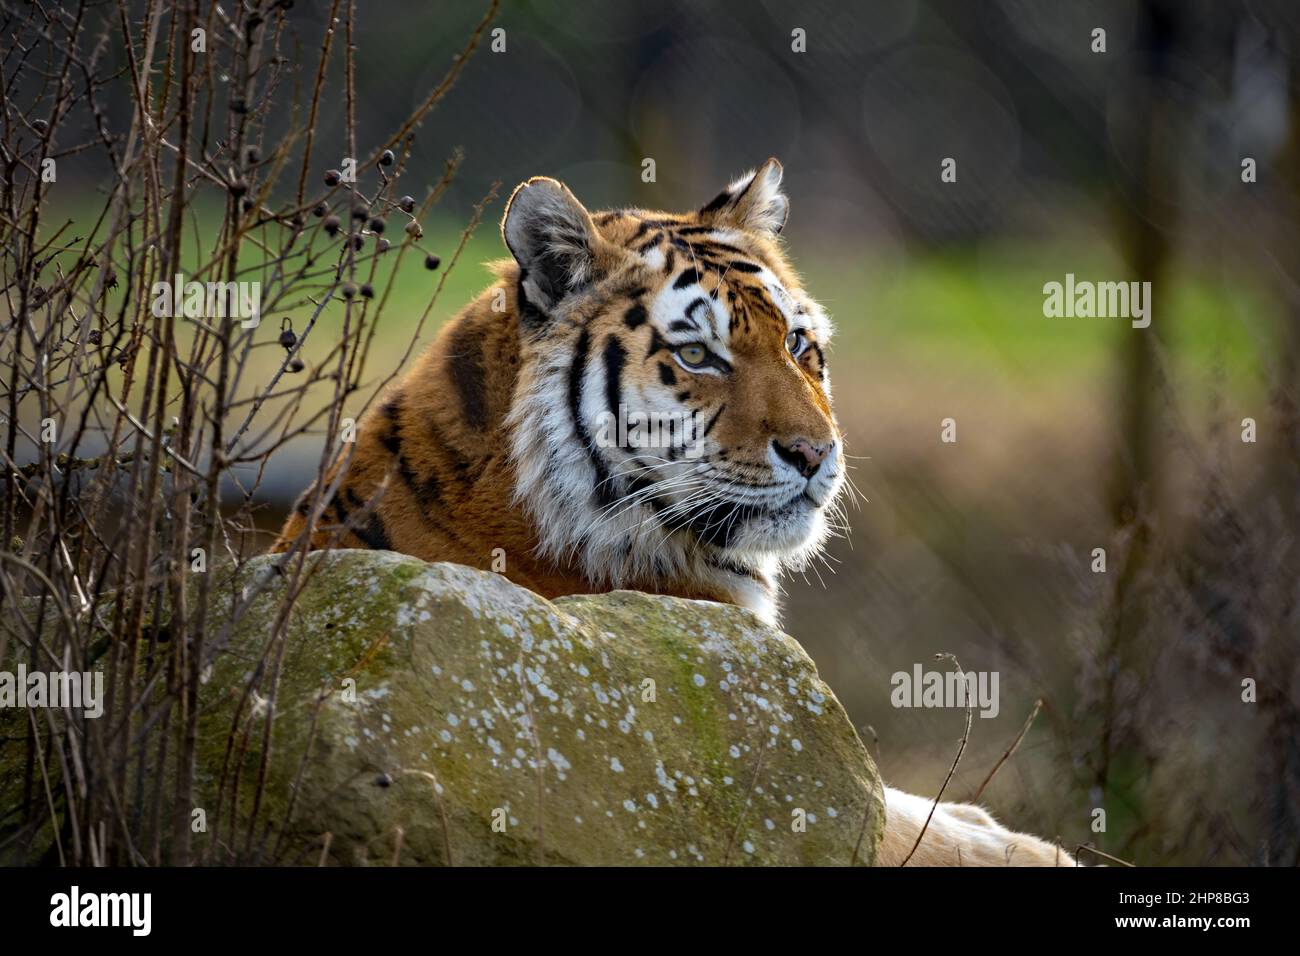 Fuoco selettivo sparato di una tigre di amur nello zoo Foto Stock